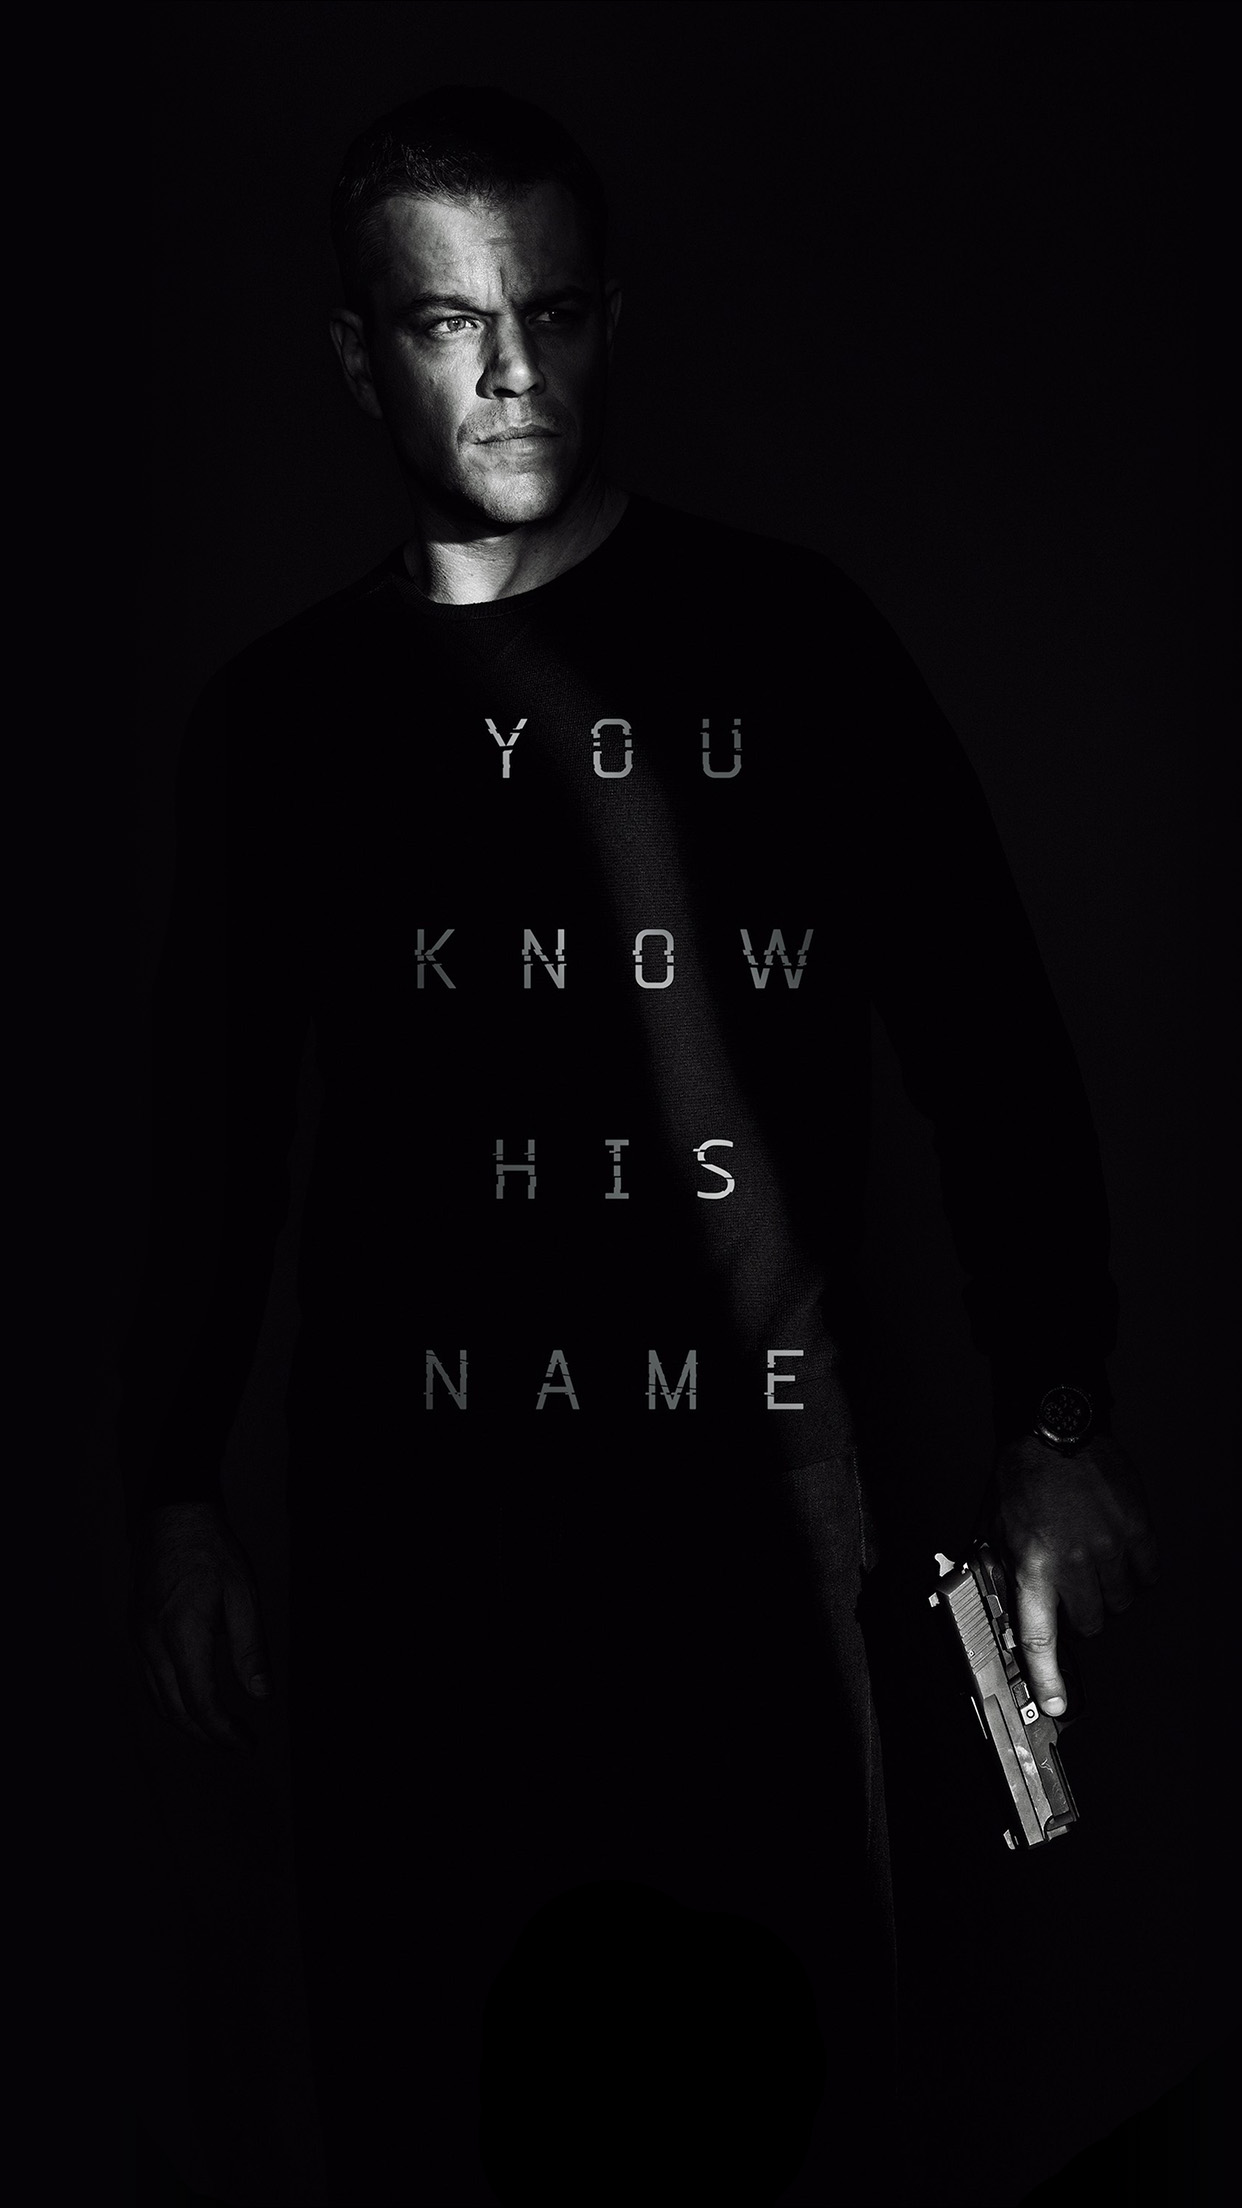 Jason Bourne Film Poster Art Illustration Full Android wallpaper